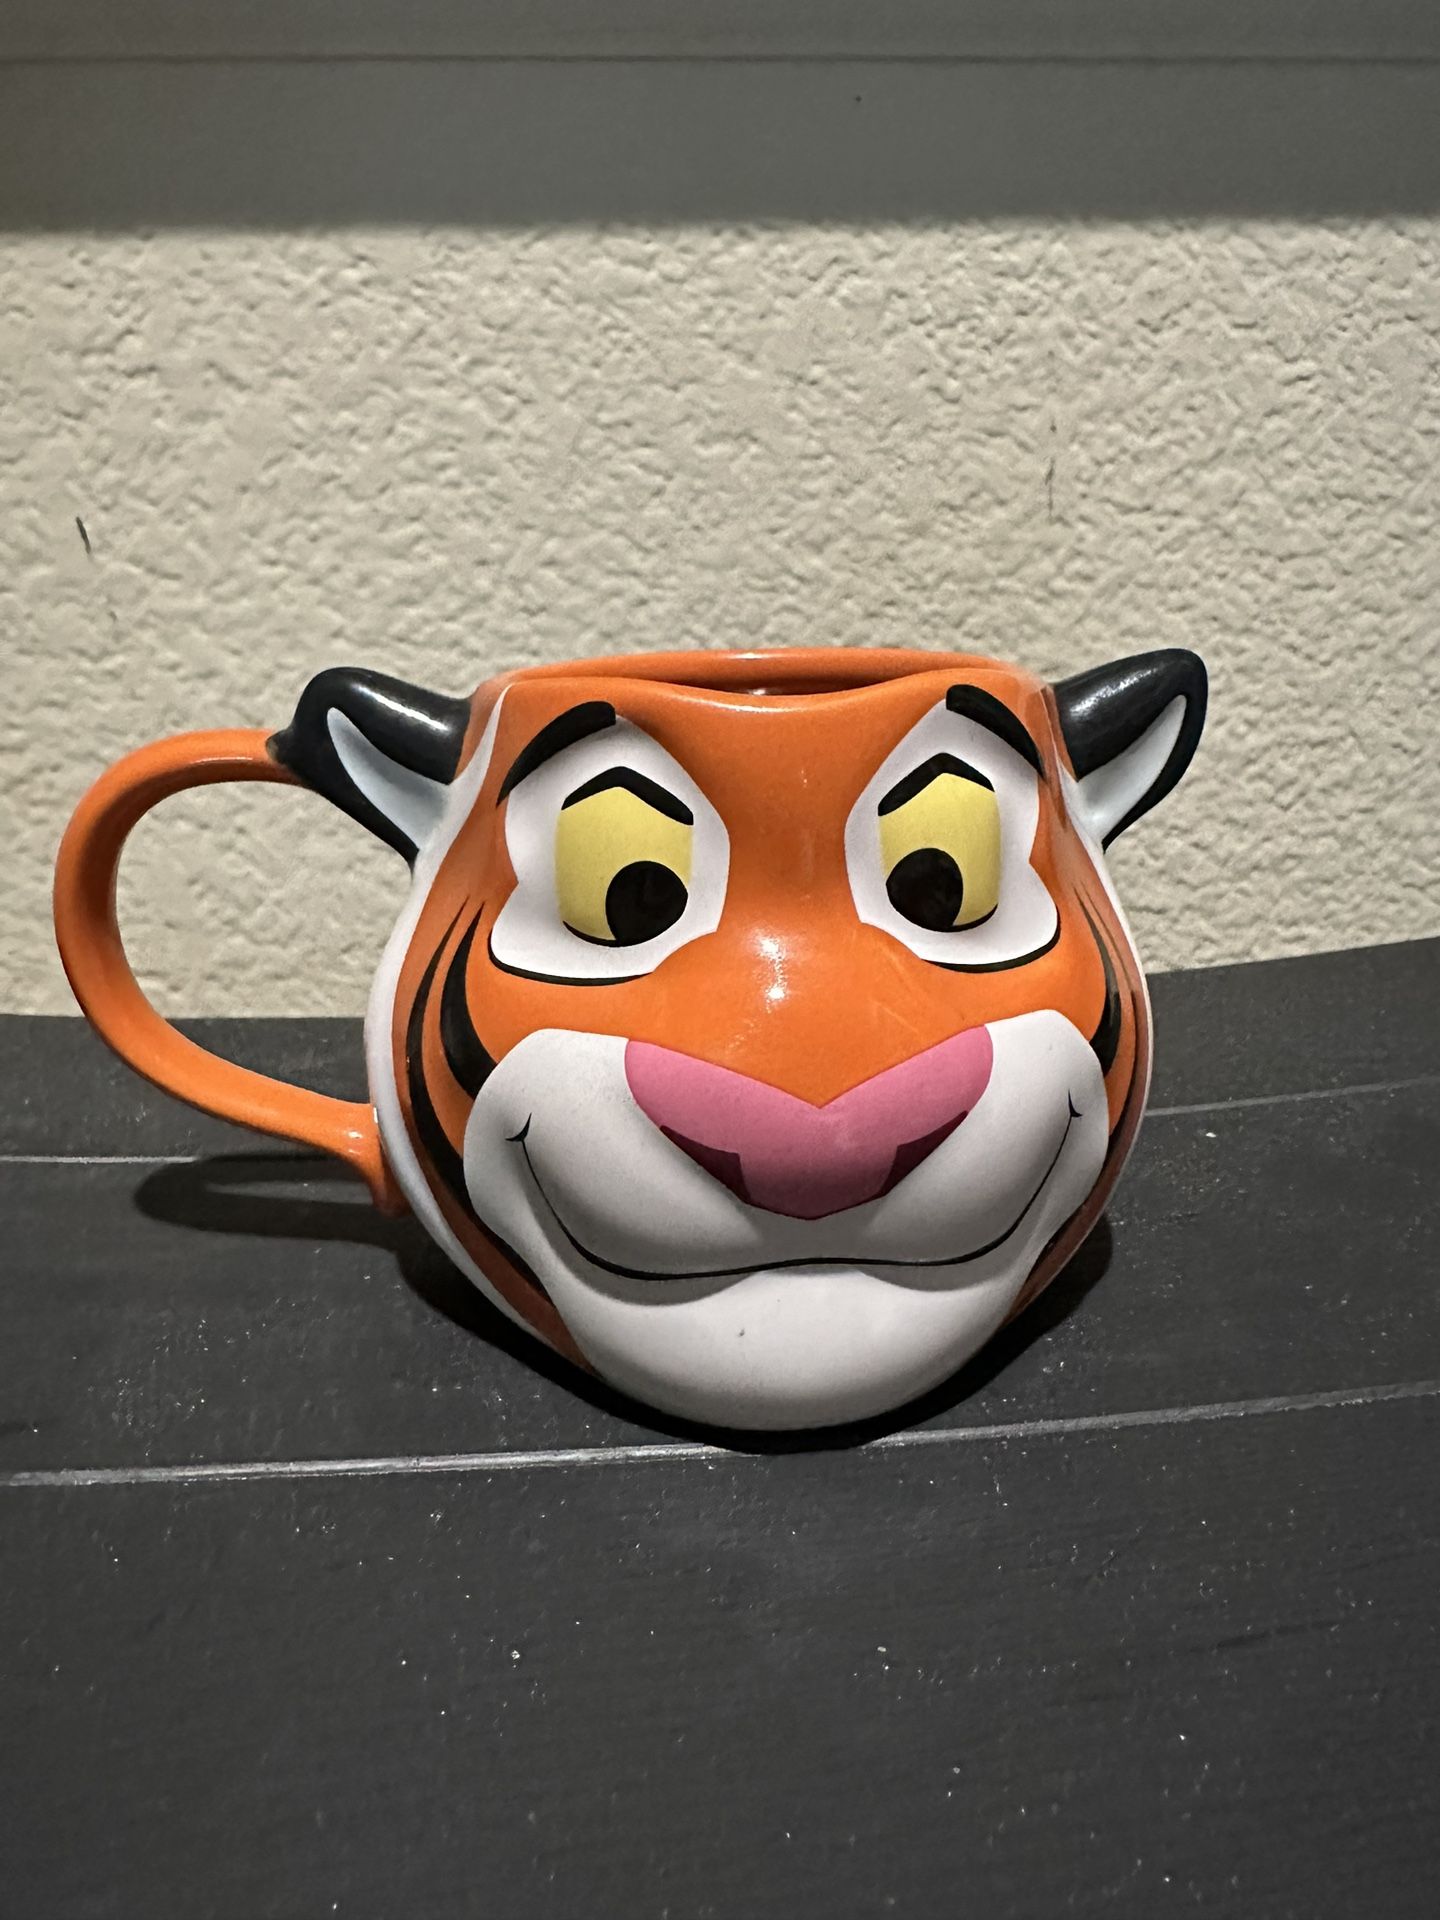 Aladdin Raja Cup Mug Collectible